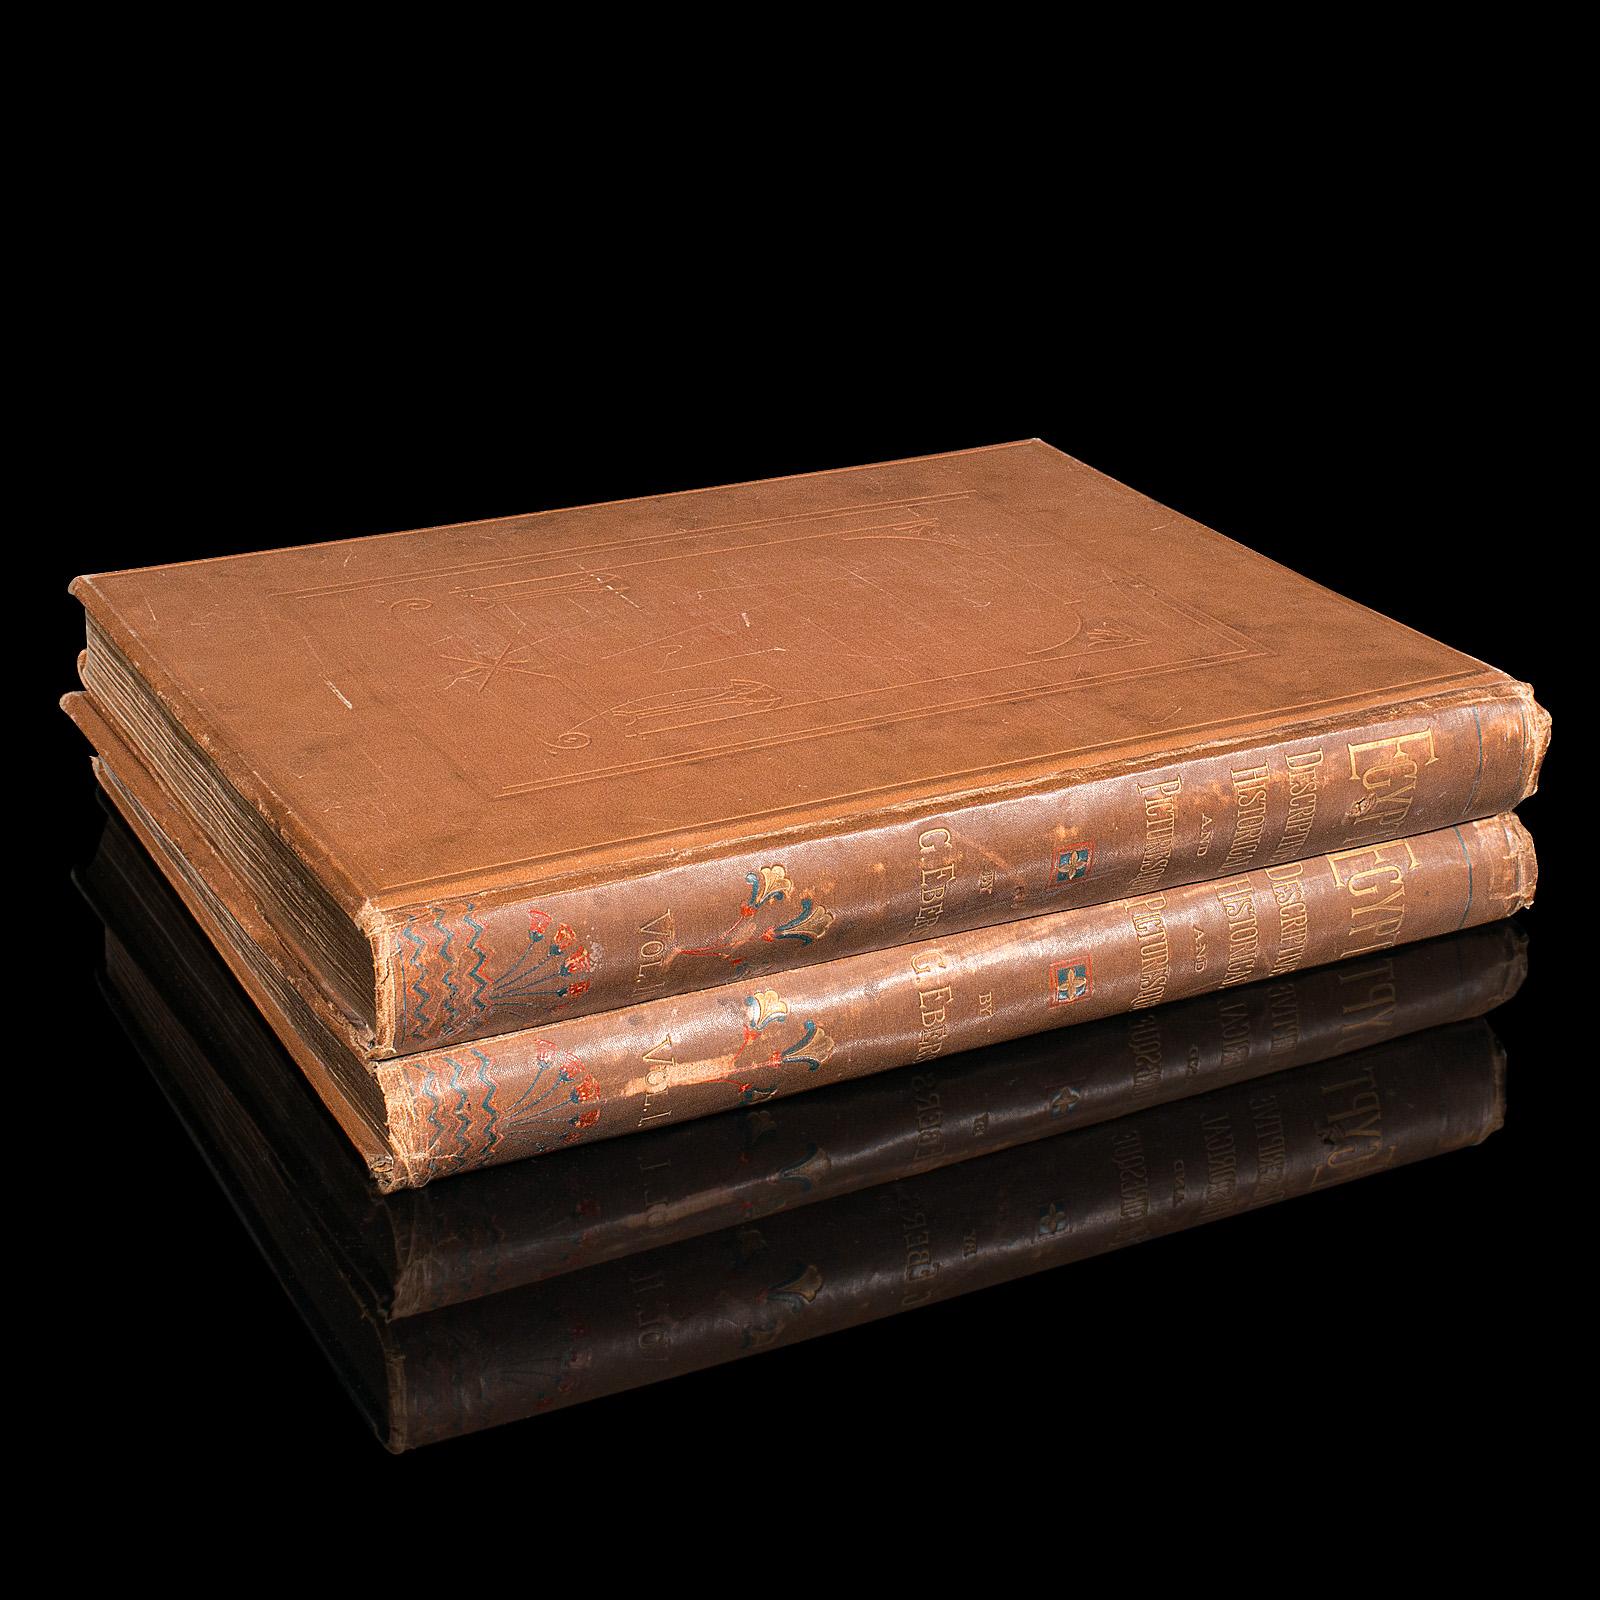 Dies sind 2 große Bände des antiken Nachschlagewerks 